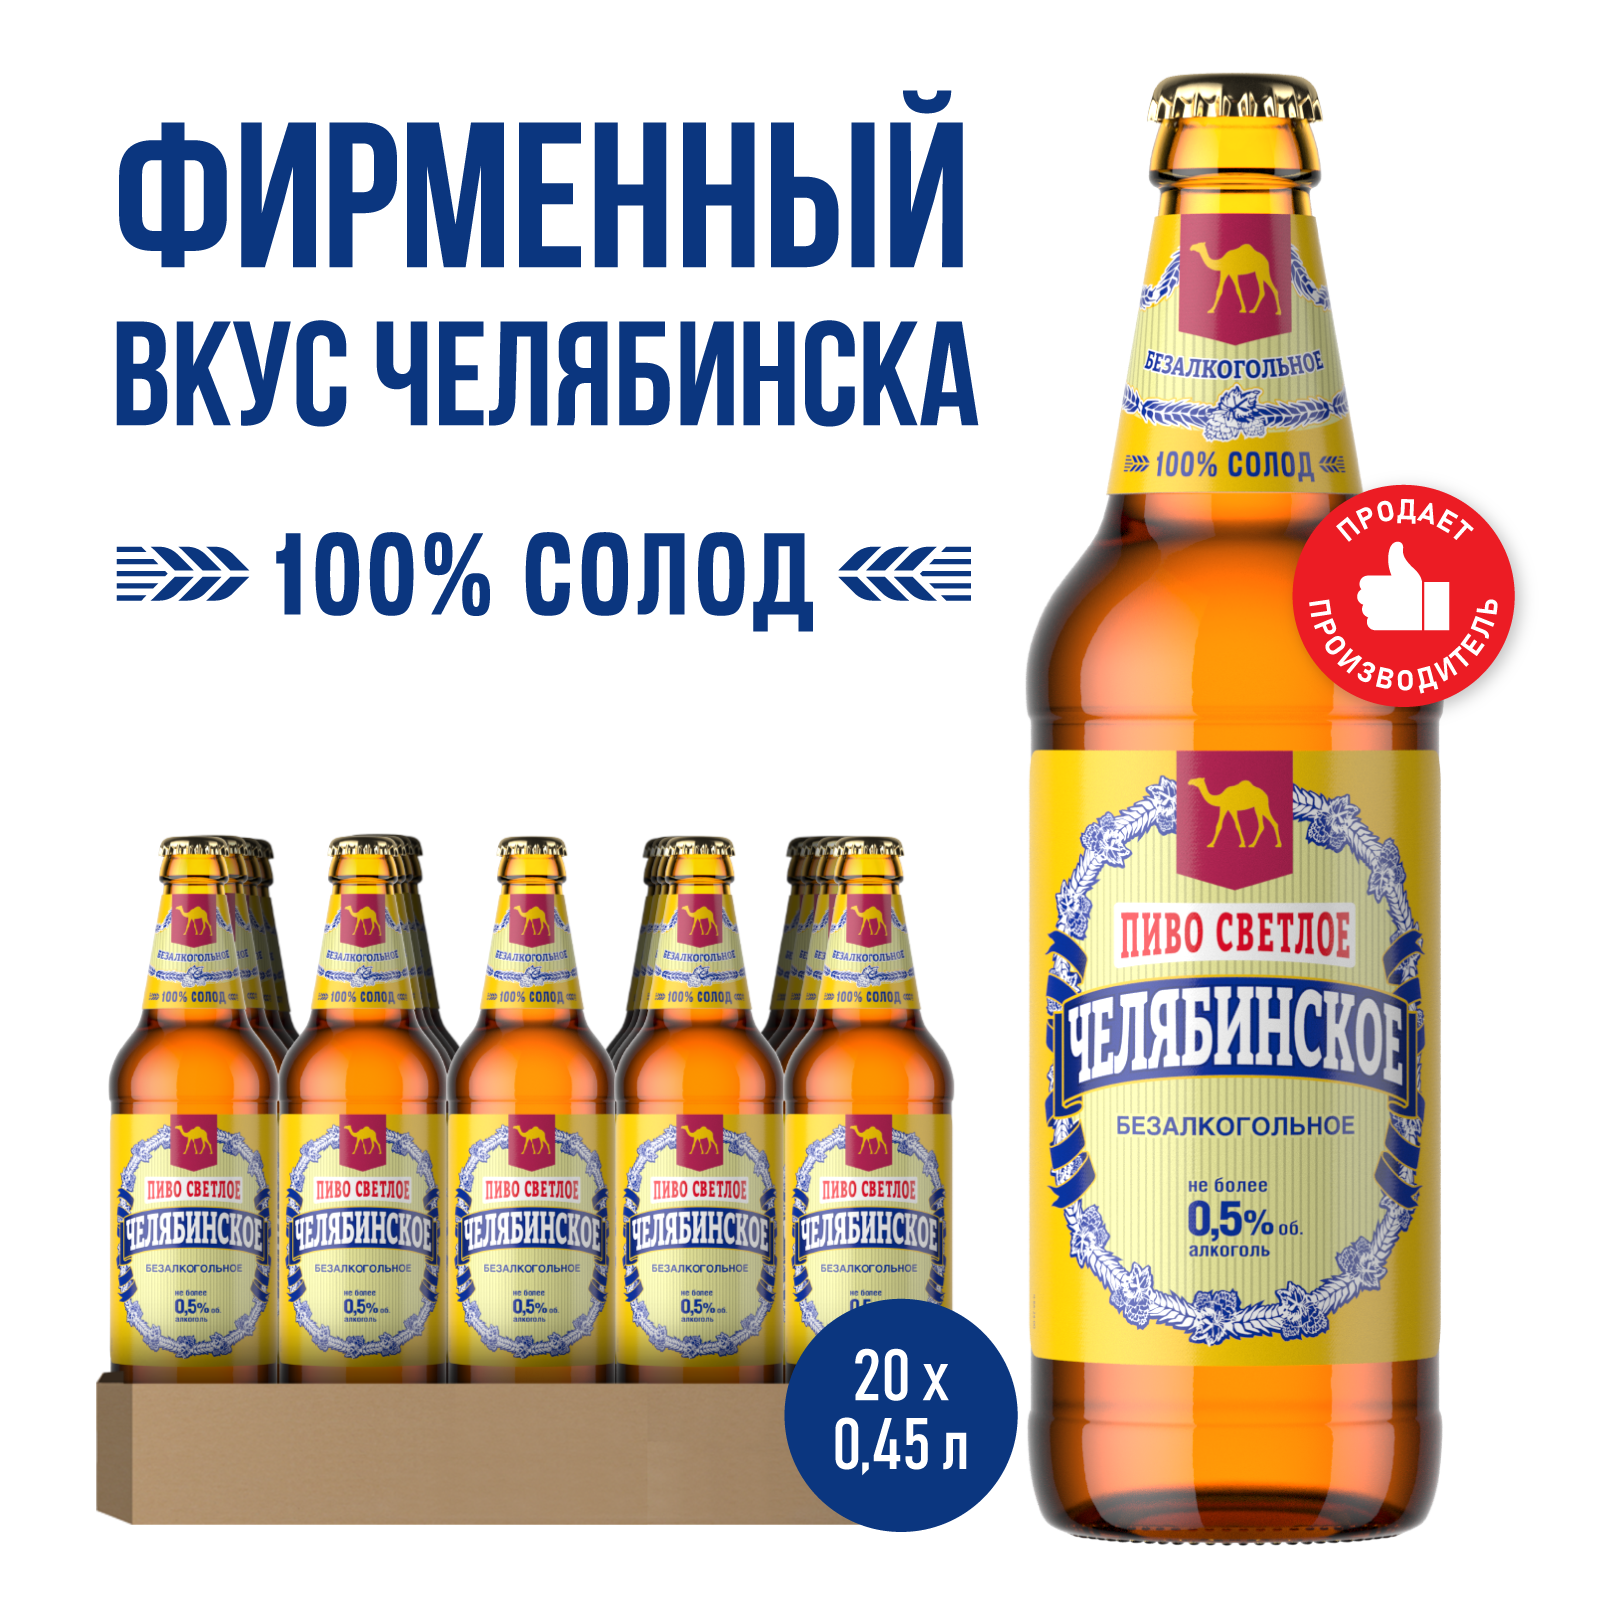 Пиво Челябинское Безалкогольное Светлое, 20 шт. х 0,45 л, бутылка